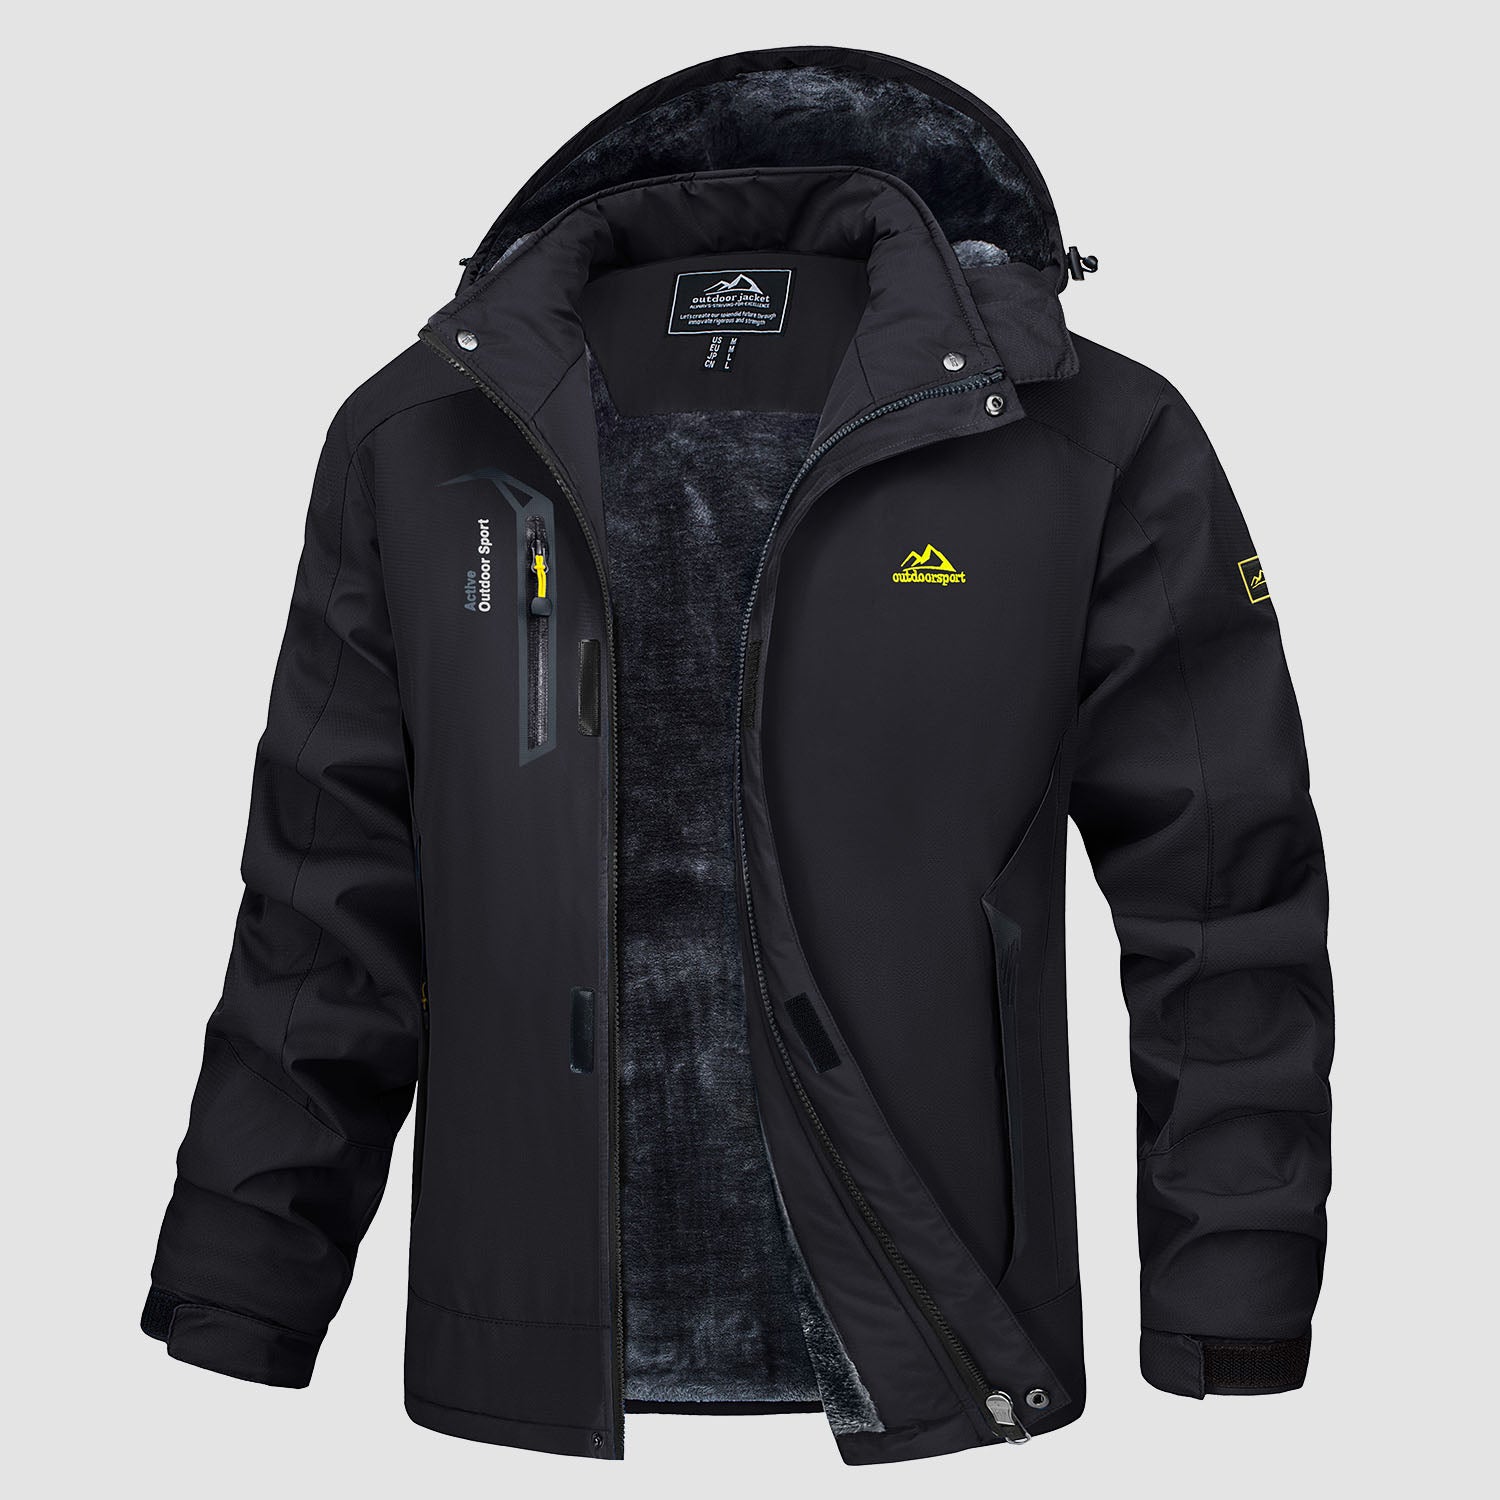 Men's Winter Jacket Outdoor Jacket Warm Lined Waterproof Parka Army Coat S  M-XXL 